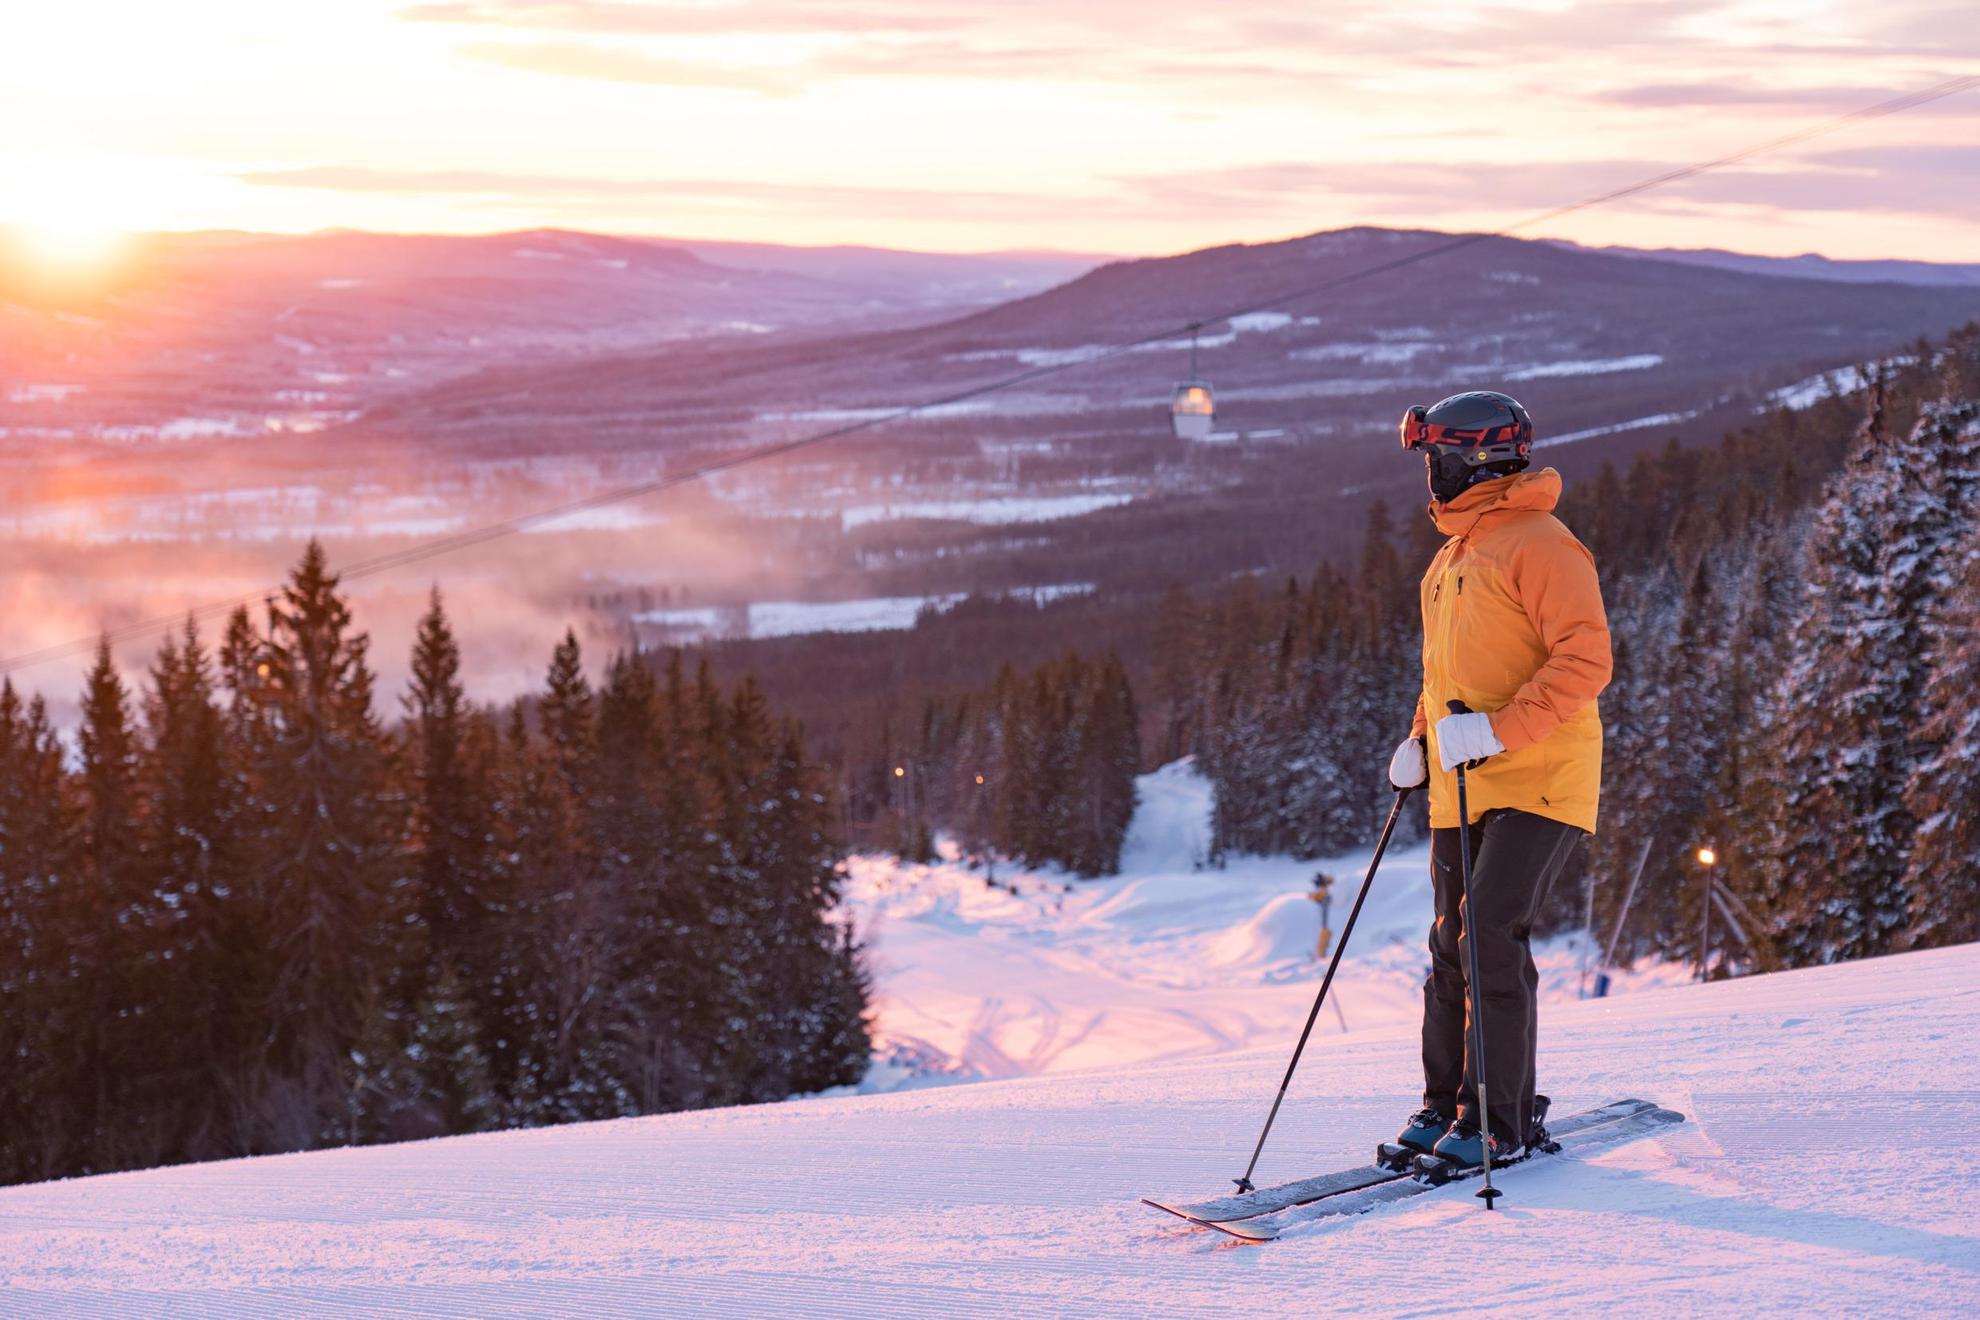 Een persoon met skiuitrusting staat op een skihelling en kijkt naar de zonsondergang.